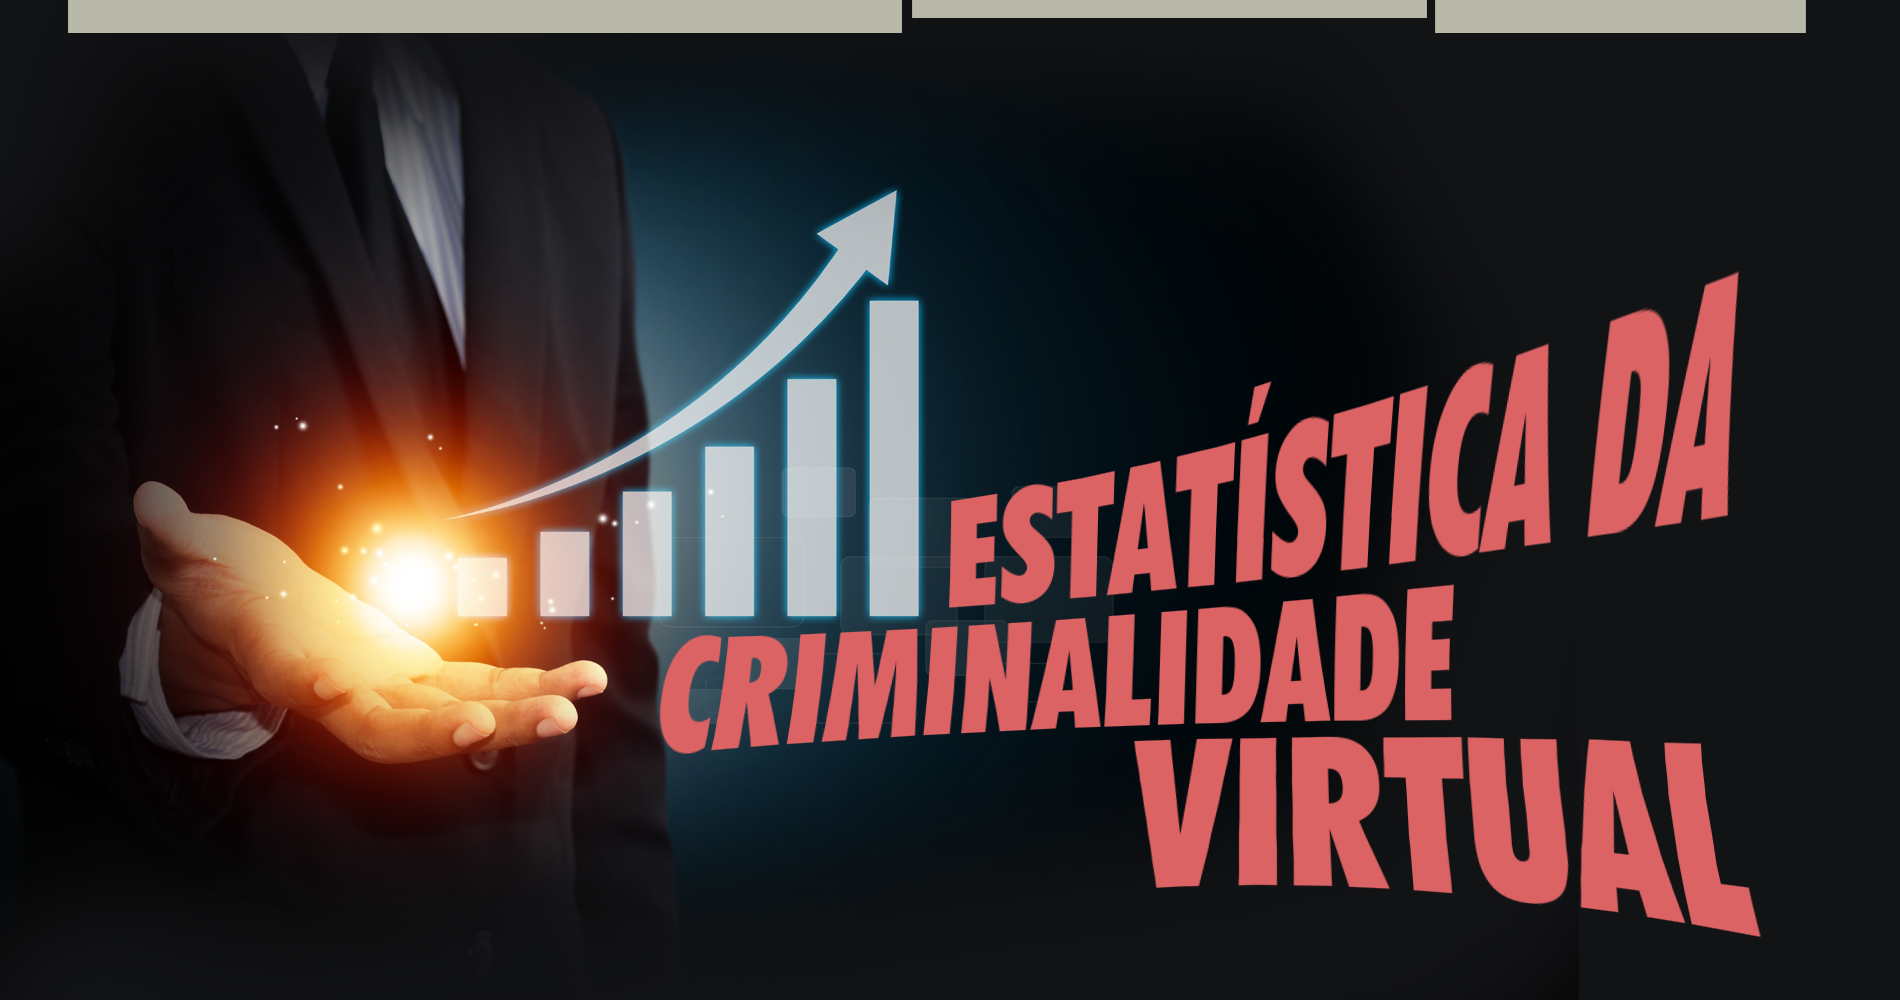 Estatística da criminalidade virtual.